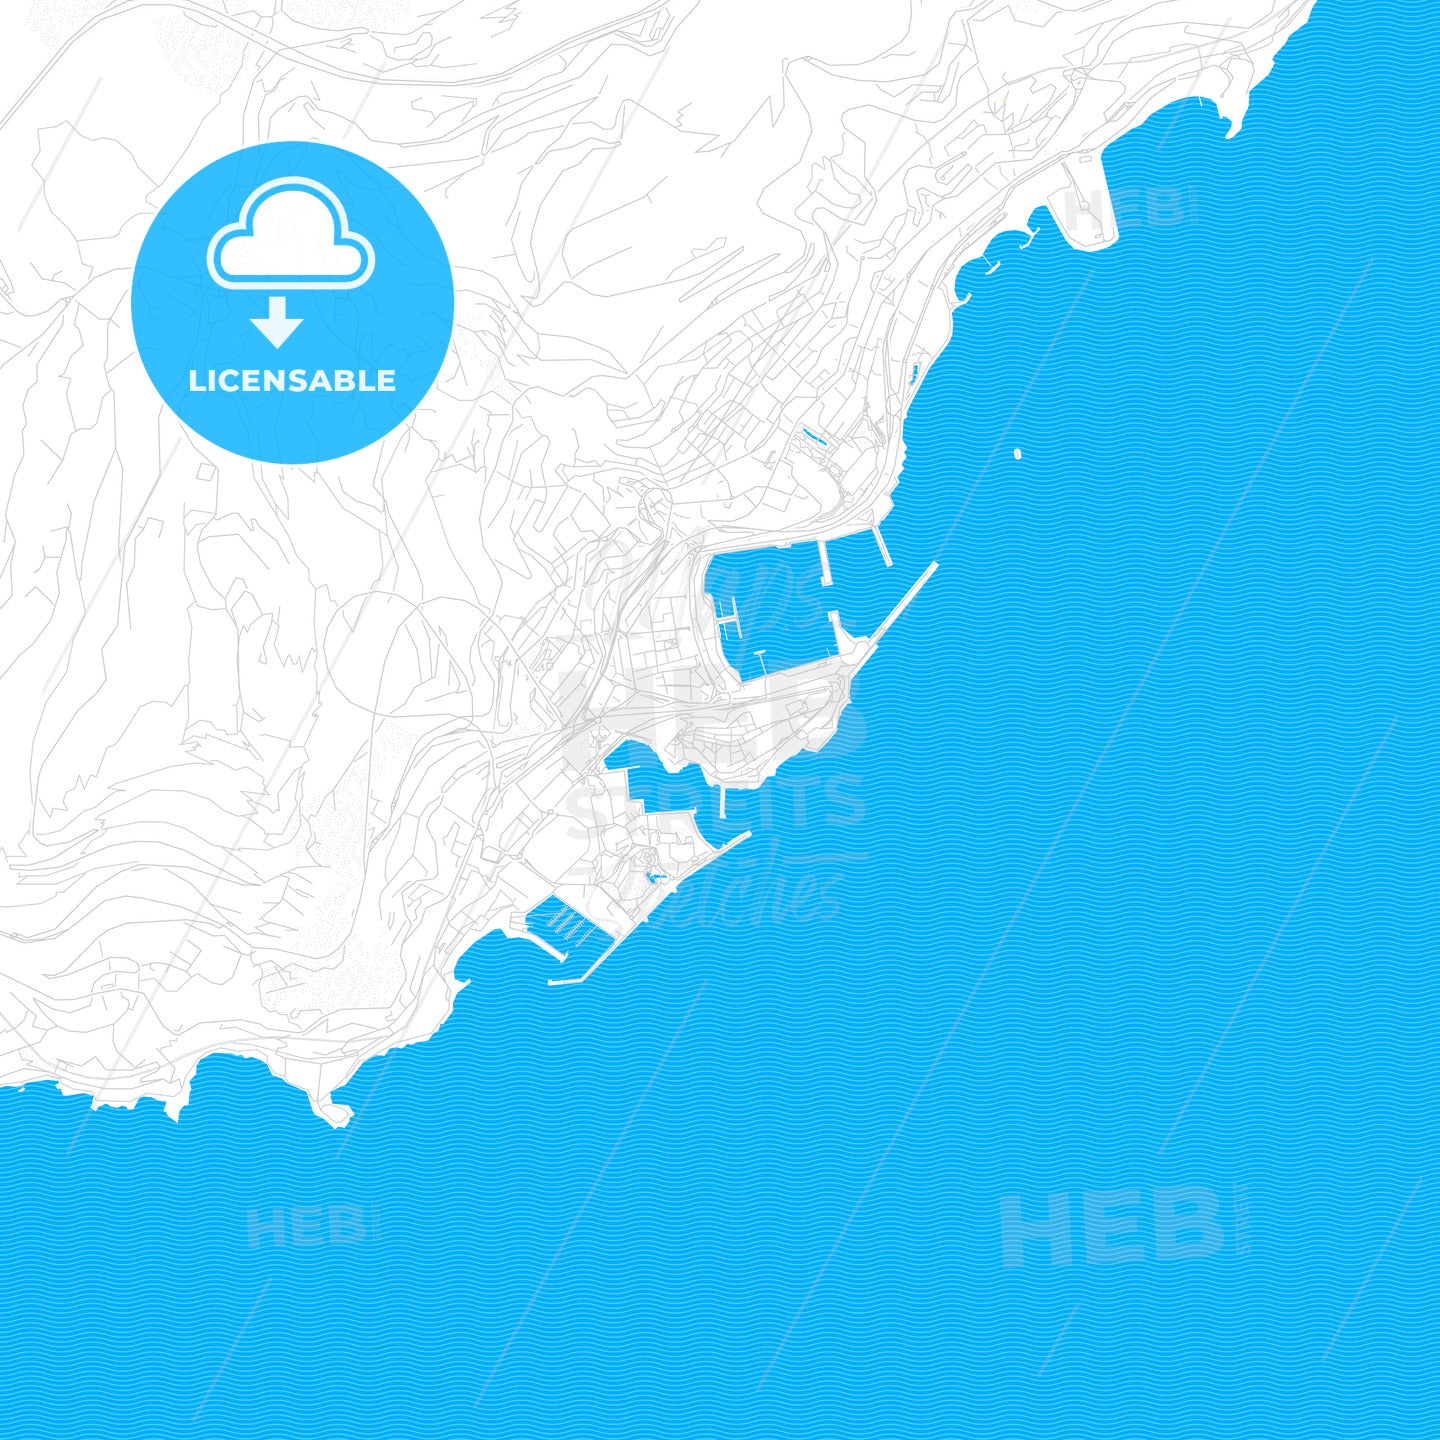 Monaco-Ville, Monaco PDF vector map with water in focus